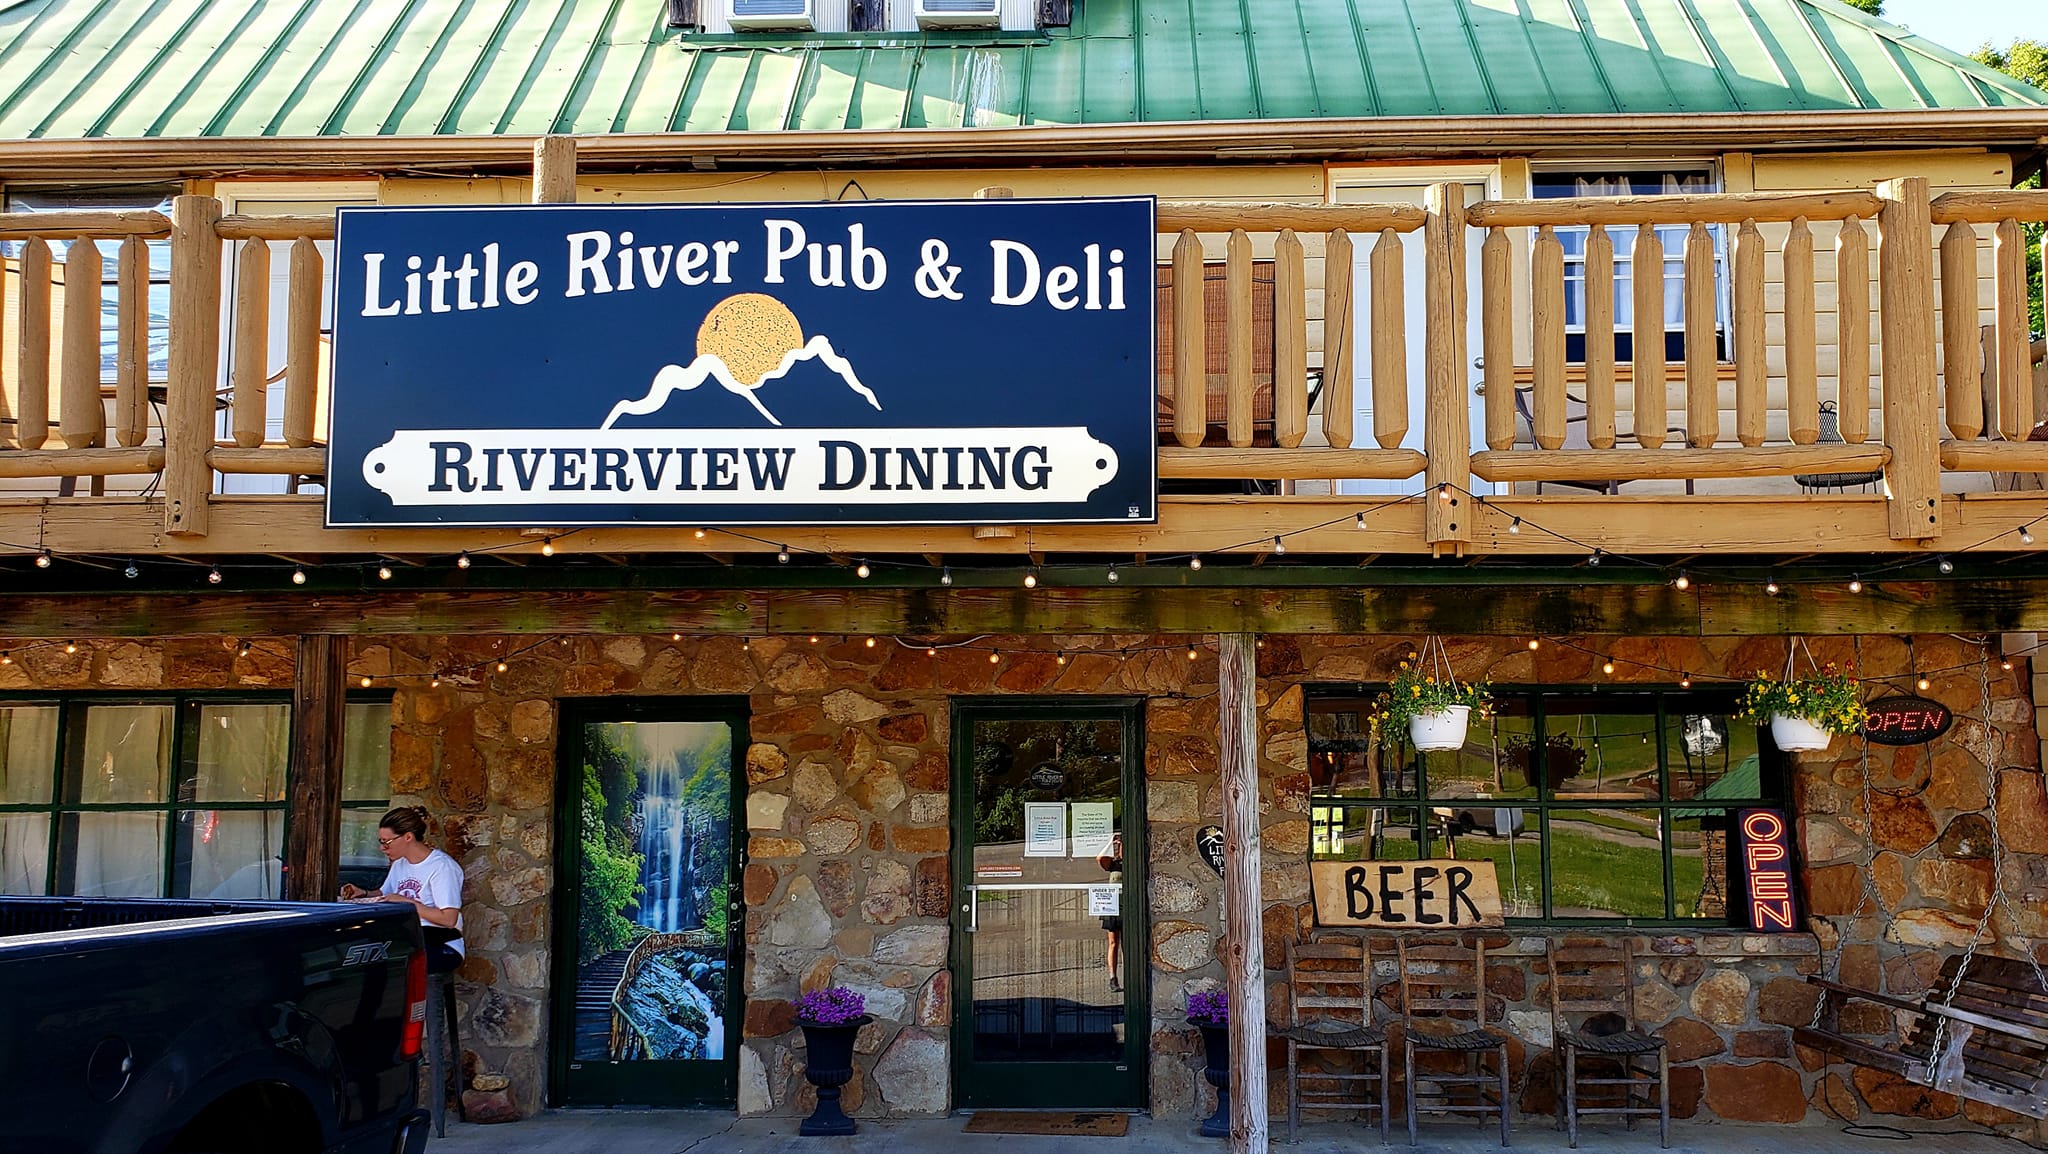 Little River Pub & Deli